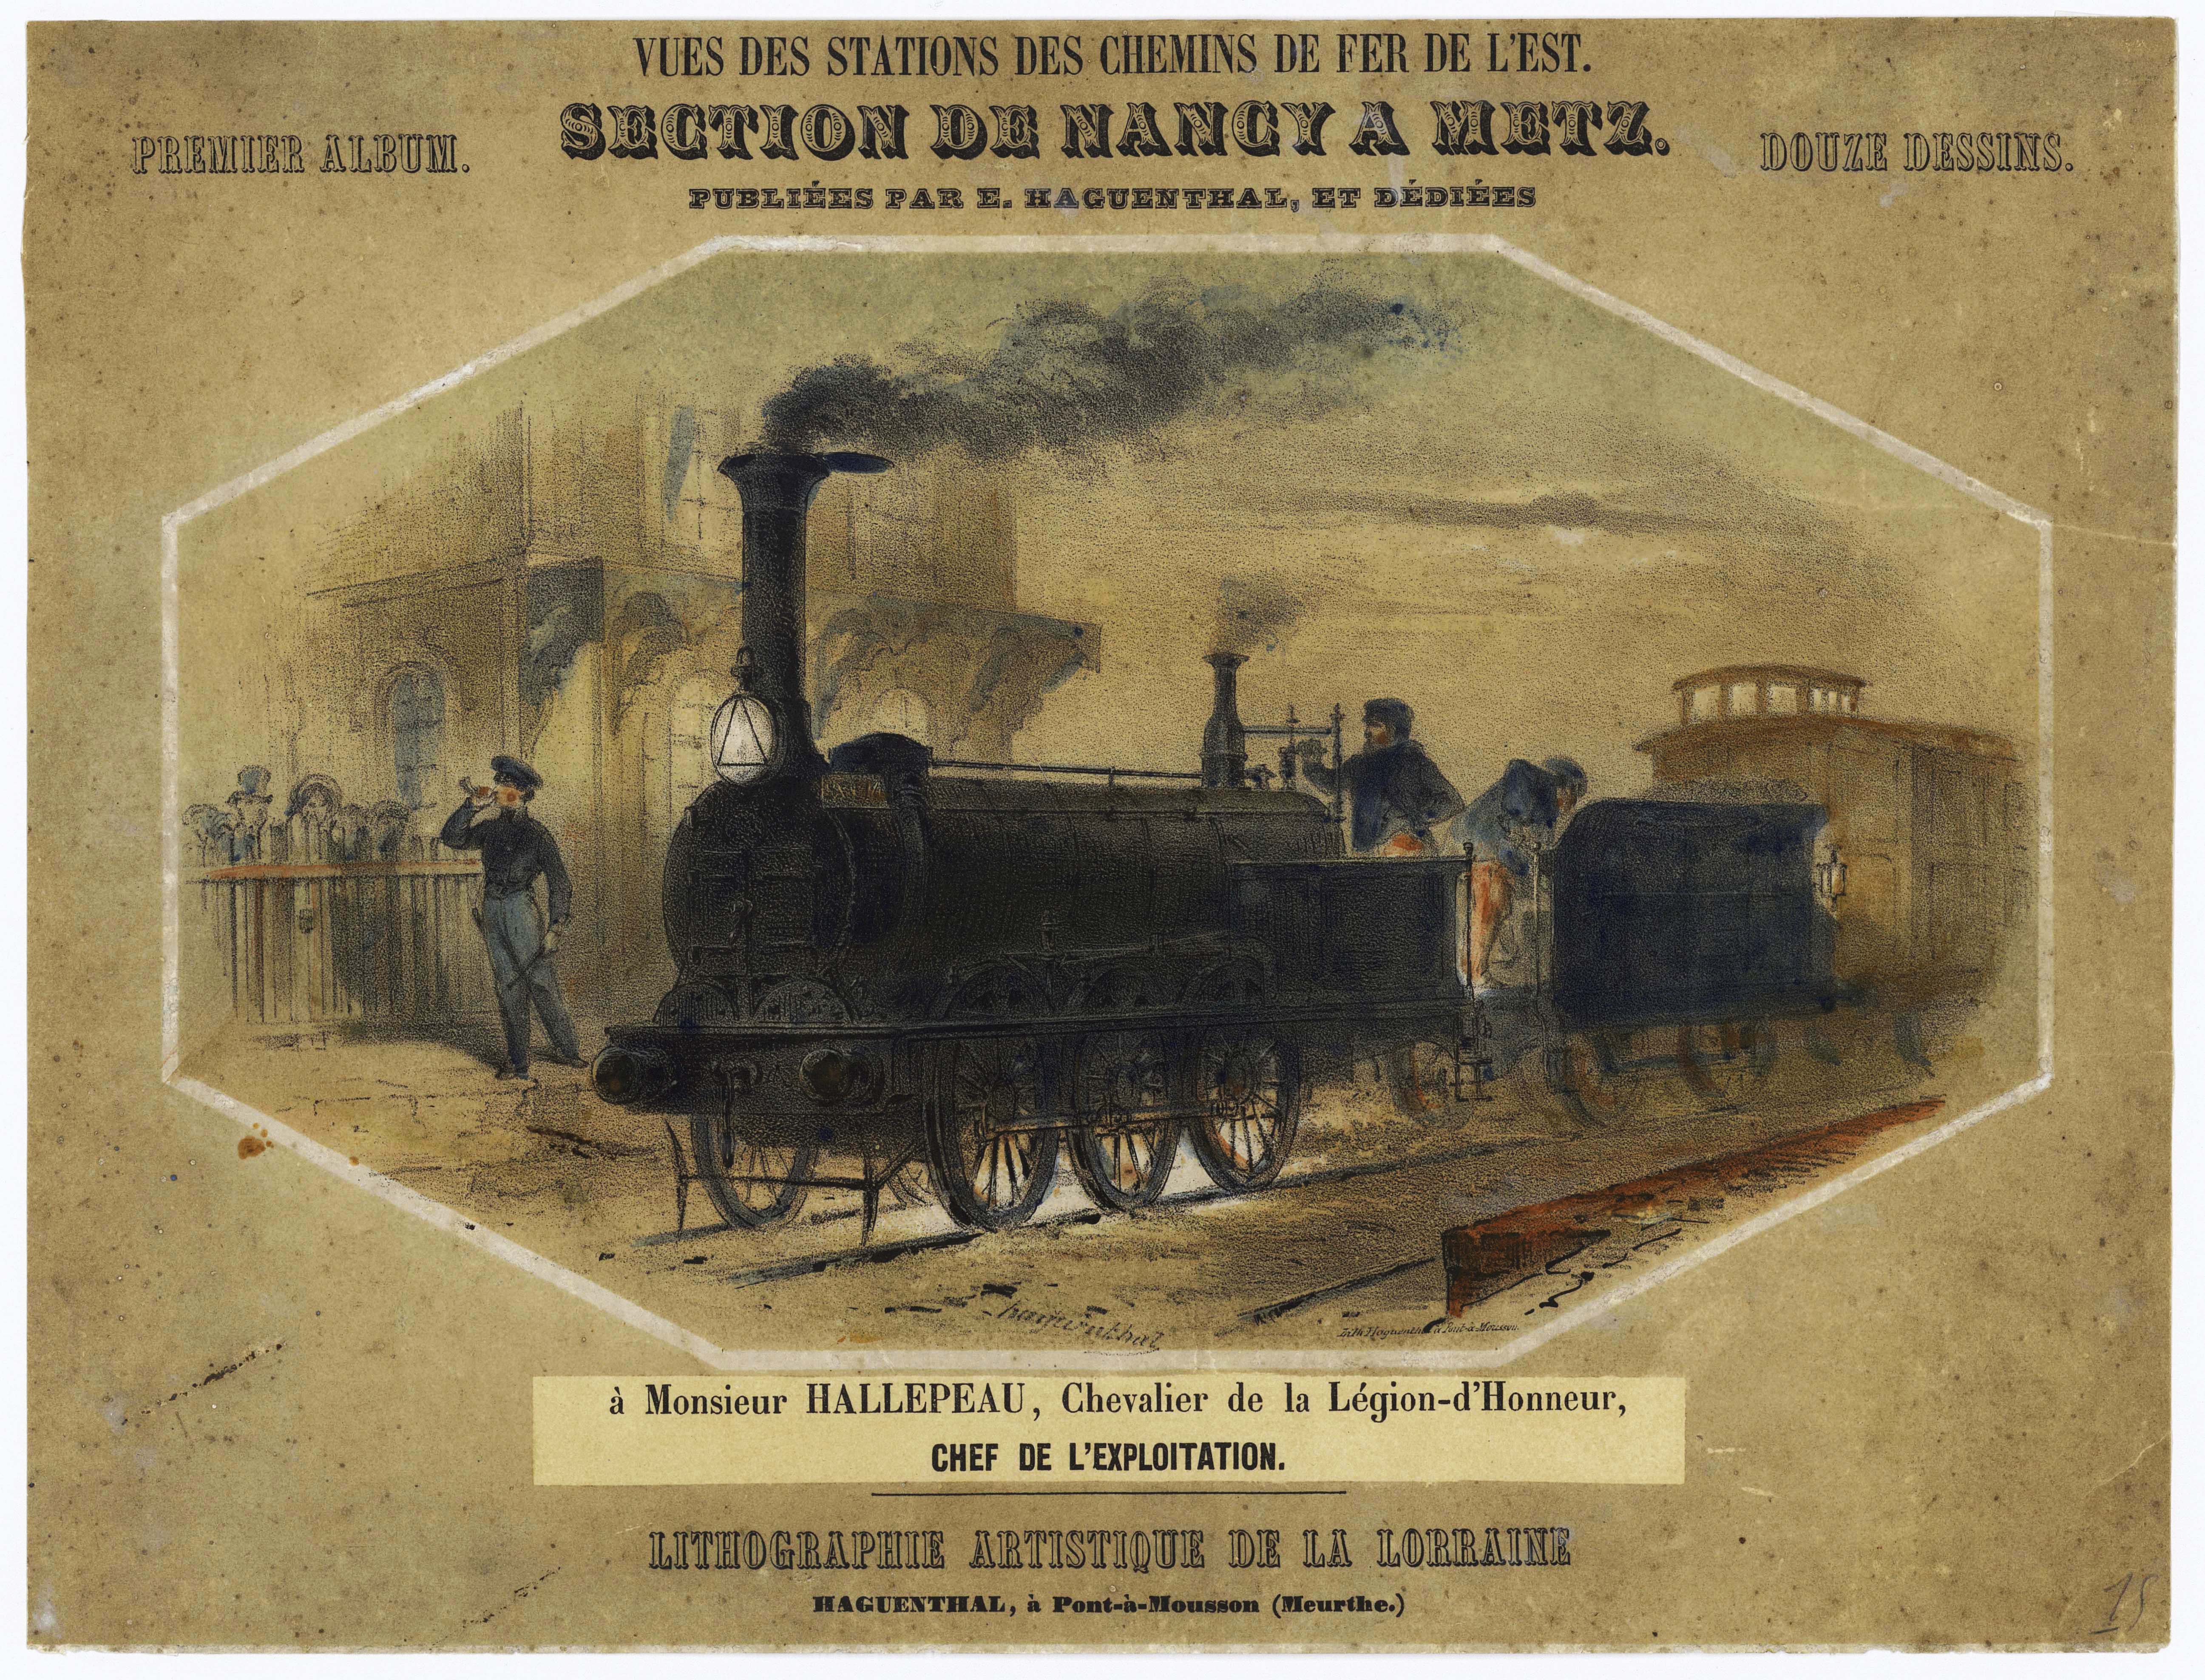 Ouverture de la section de Nancy à Metz. Elie Haguenthal (1822- 1881). Lithographie en couleur [1850]. Pont-à-Mousson. © CCGPF Fonds cheminot